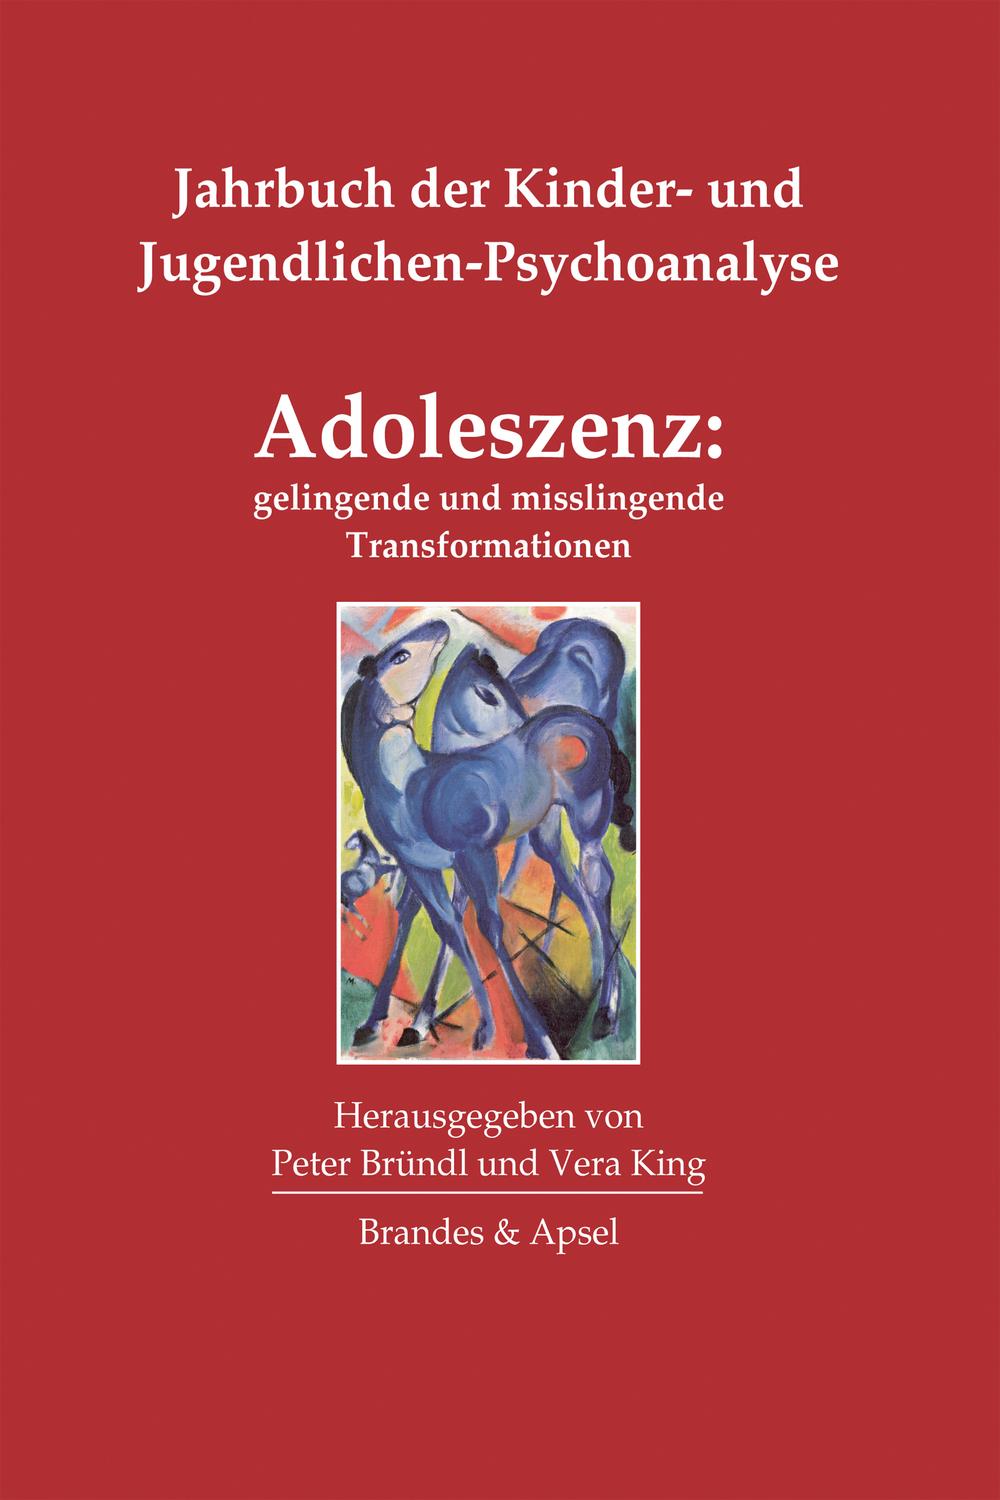 Adoleszenz: gelingende und misslingende Transformationen - Peter Bründl, Vera King